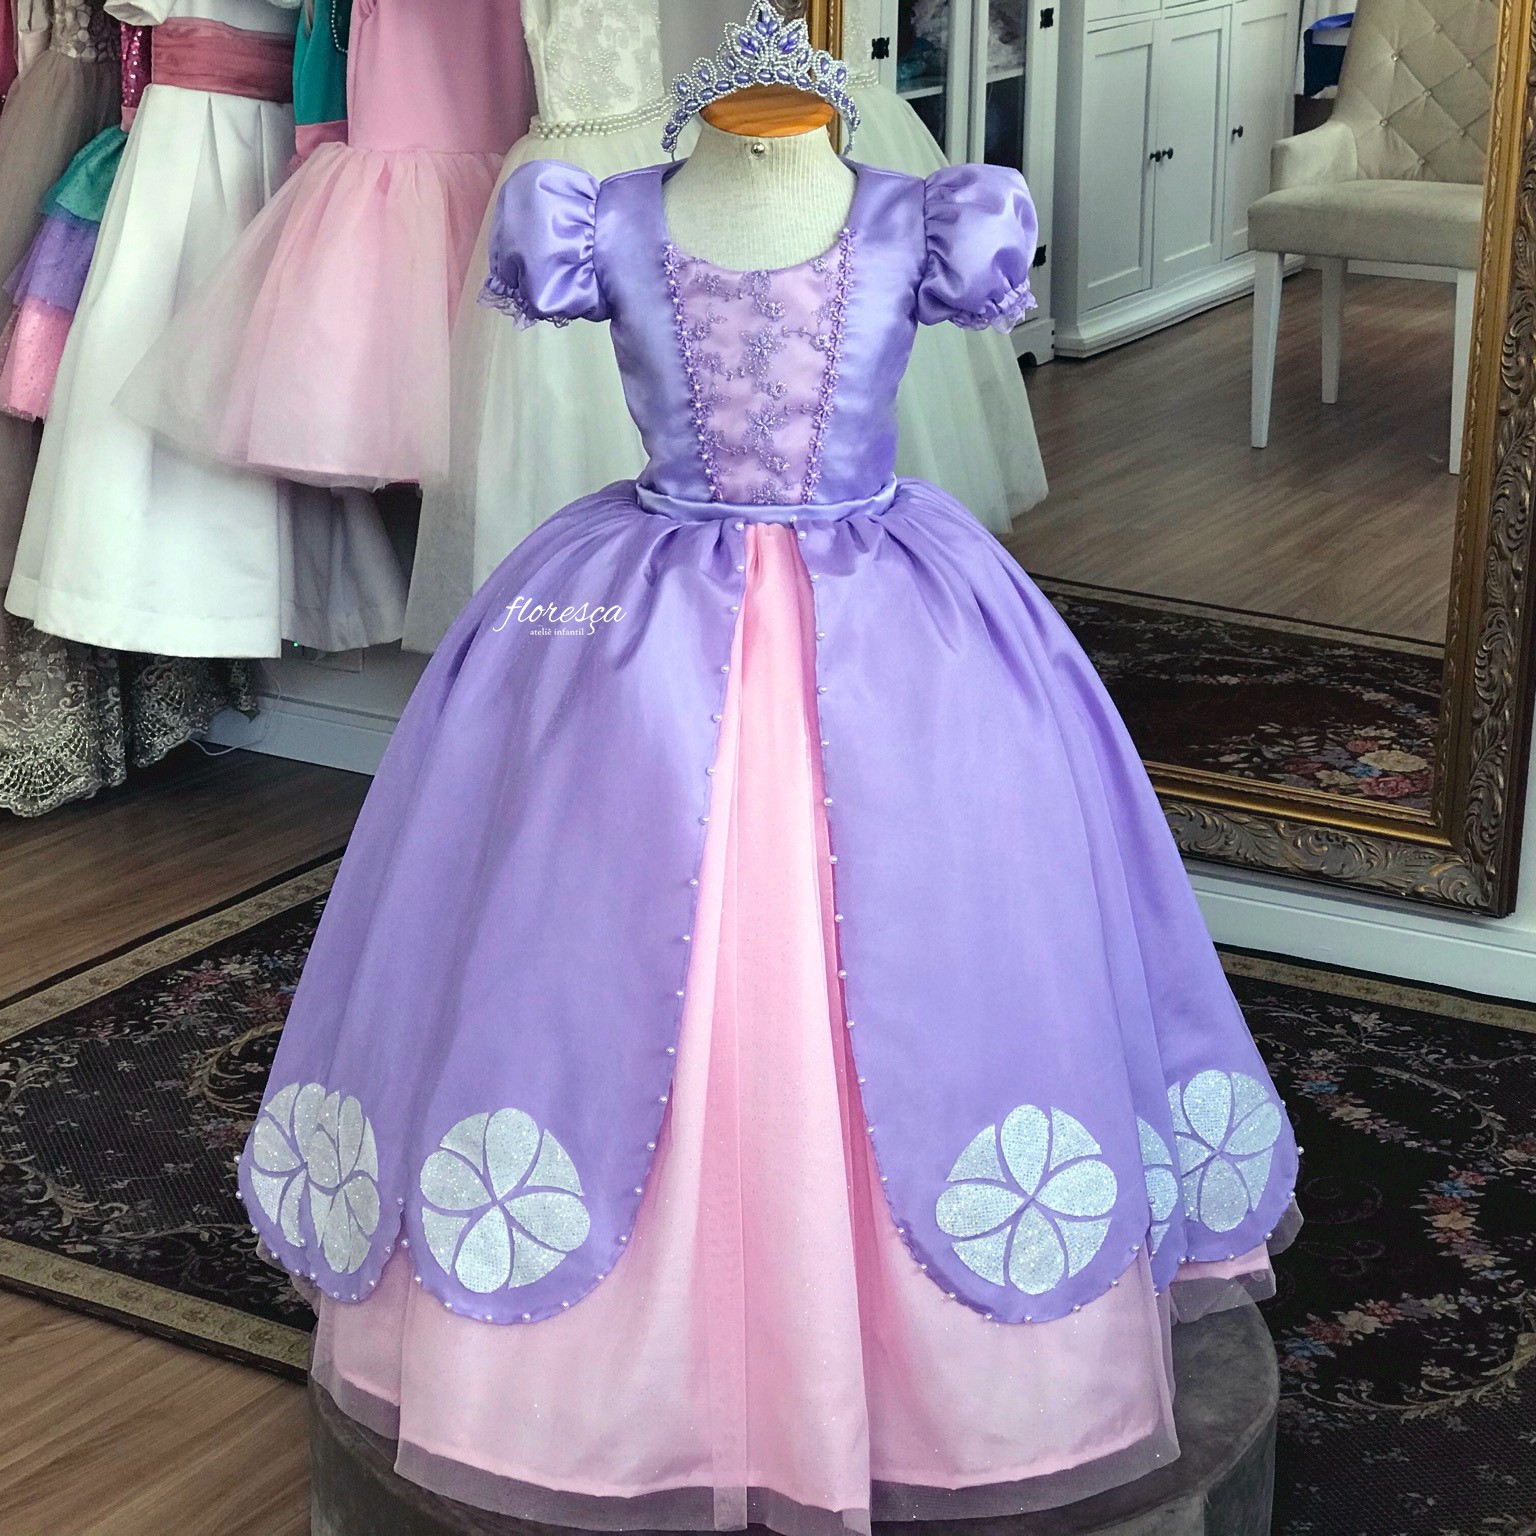 Vestido Princesa Sofia - Super Luxo e Conforto